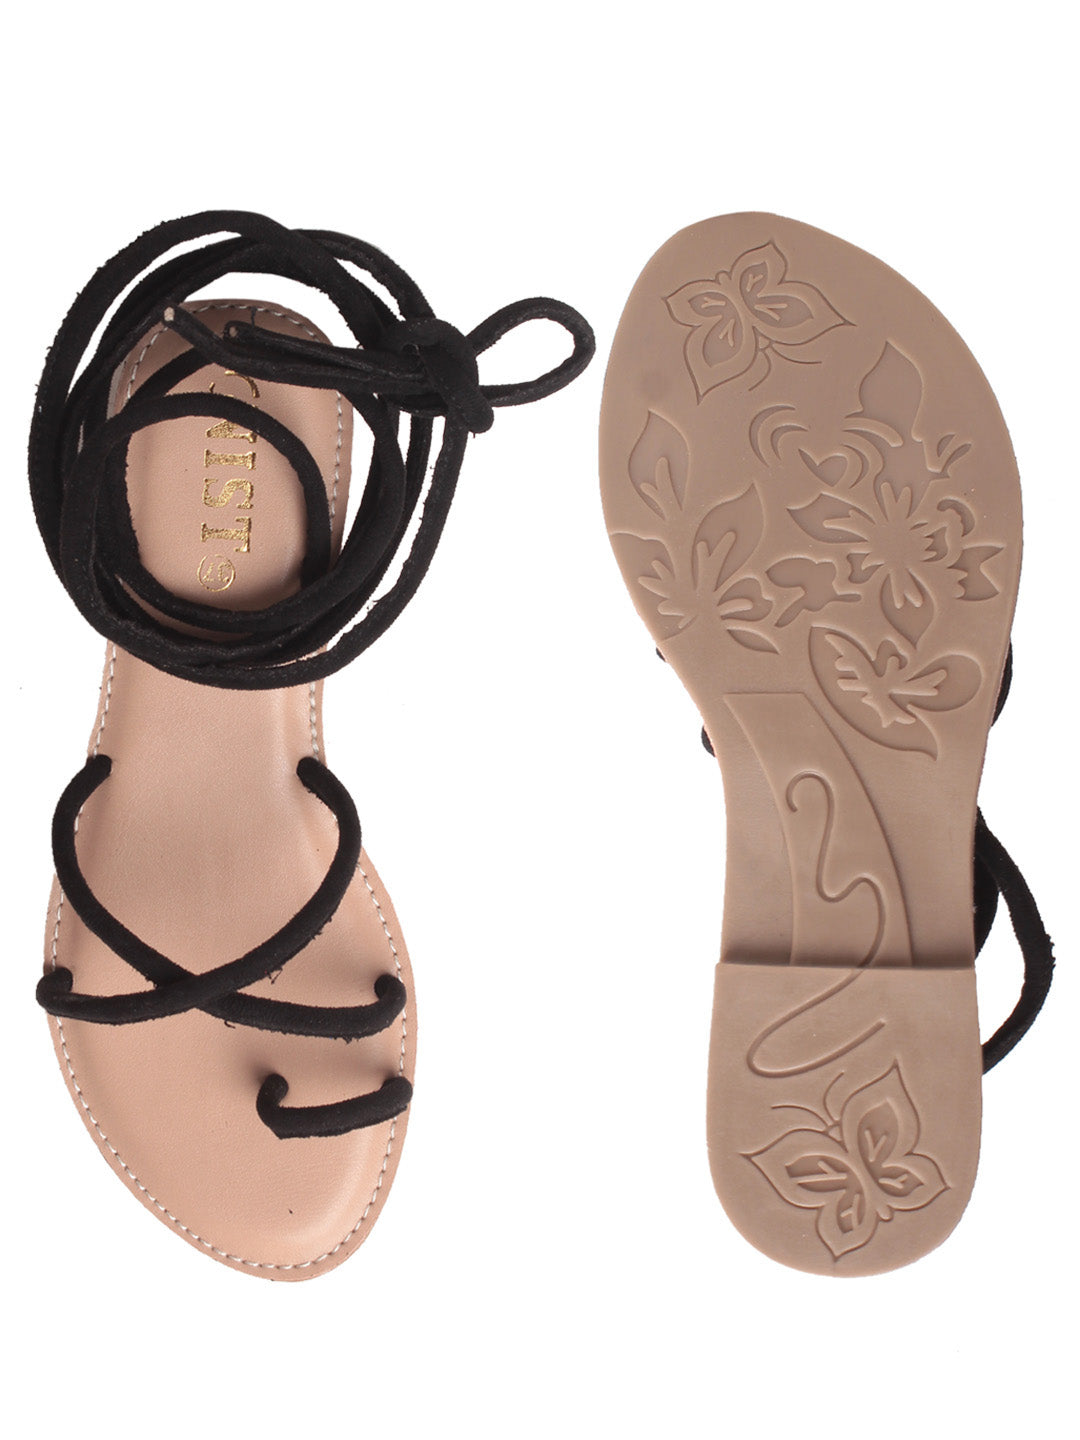 Gnist Footwear Black Tie-up Flat Sandal for Women